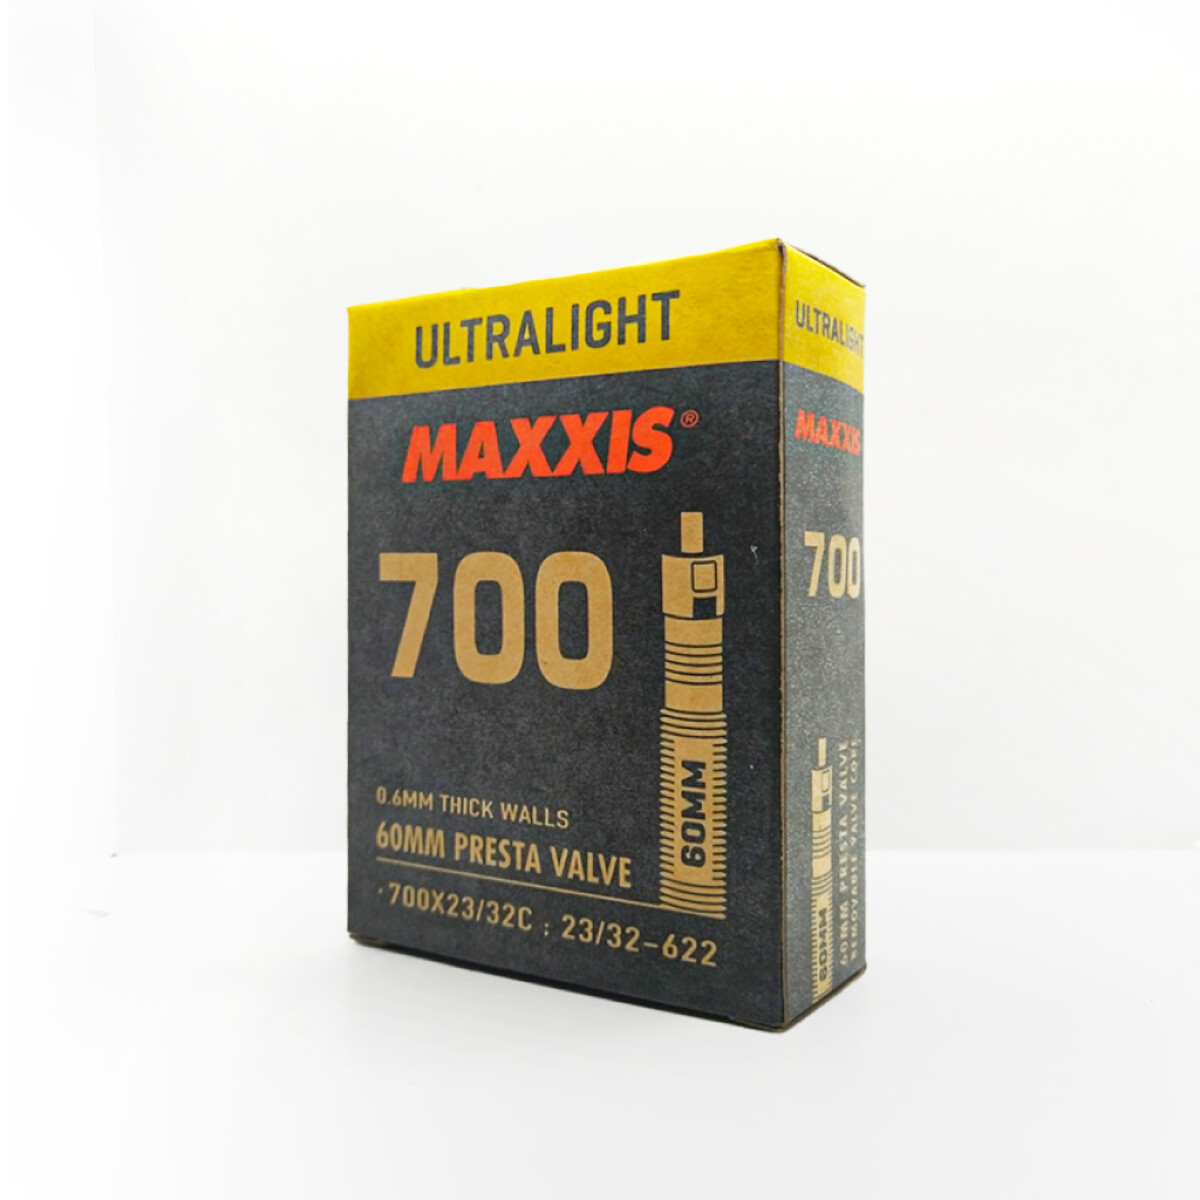 Camara Maxxis Ultralight 700x23/32 Pv60 